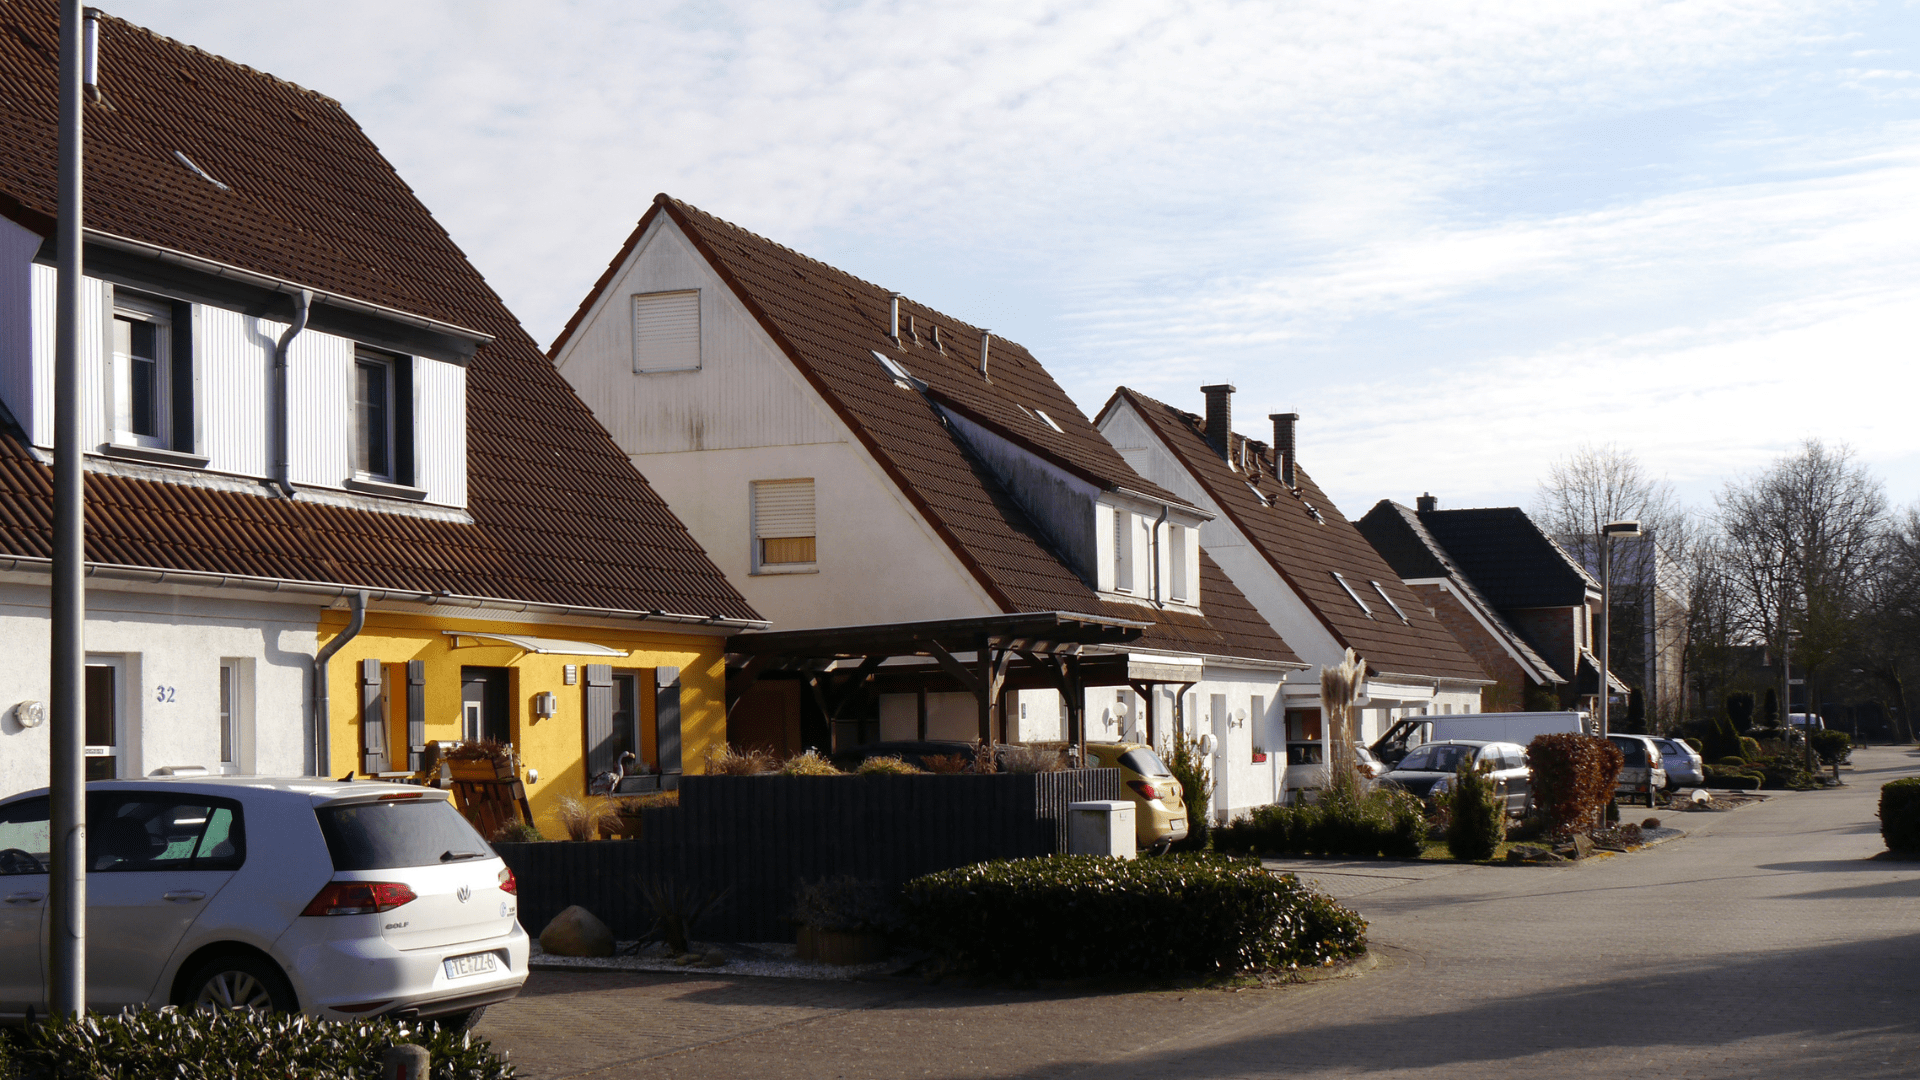 Das grenzüberschreitende Interreg-Projekt FutureBEEing hat zum Ziel, Werkzeuge für eine nachhaltige Quartiersentwicklung in Kommune zu entwickeln. Der Kreis Steinfurt ist an diesem Projekt beteiligt.